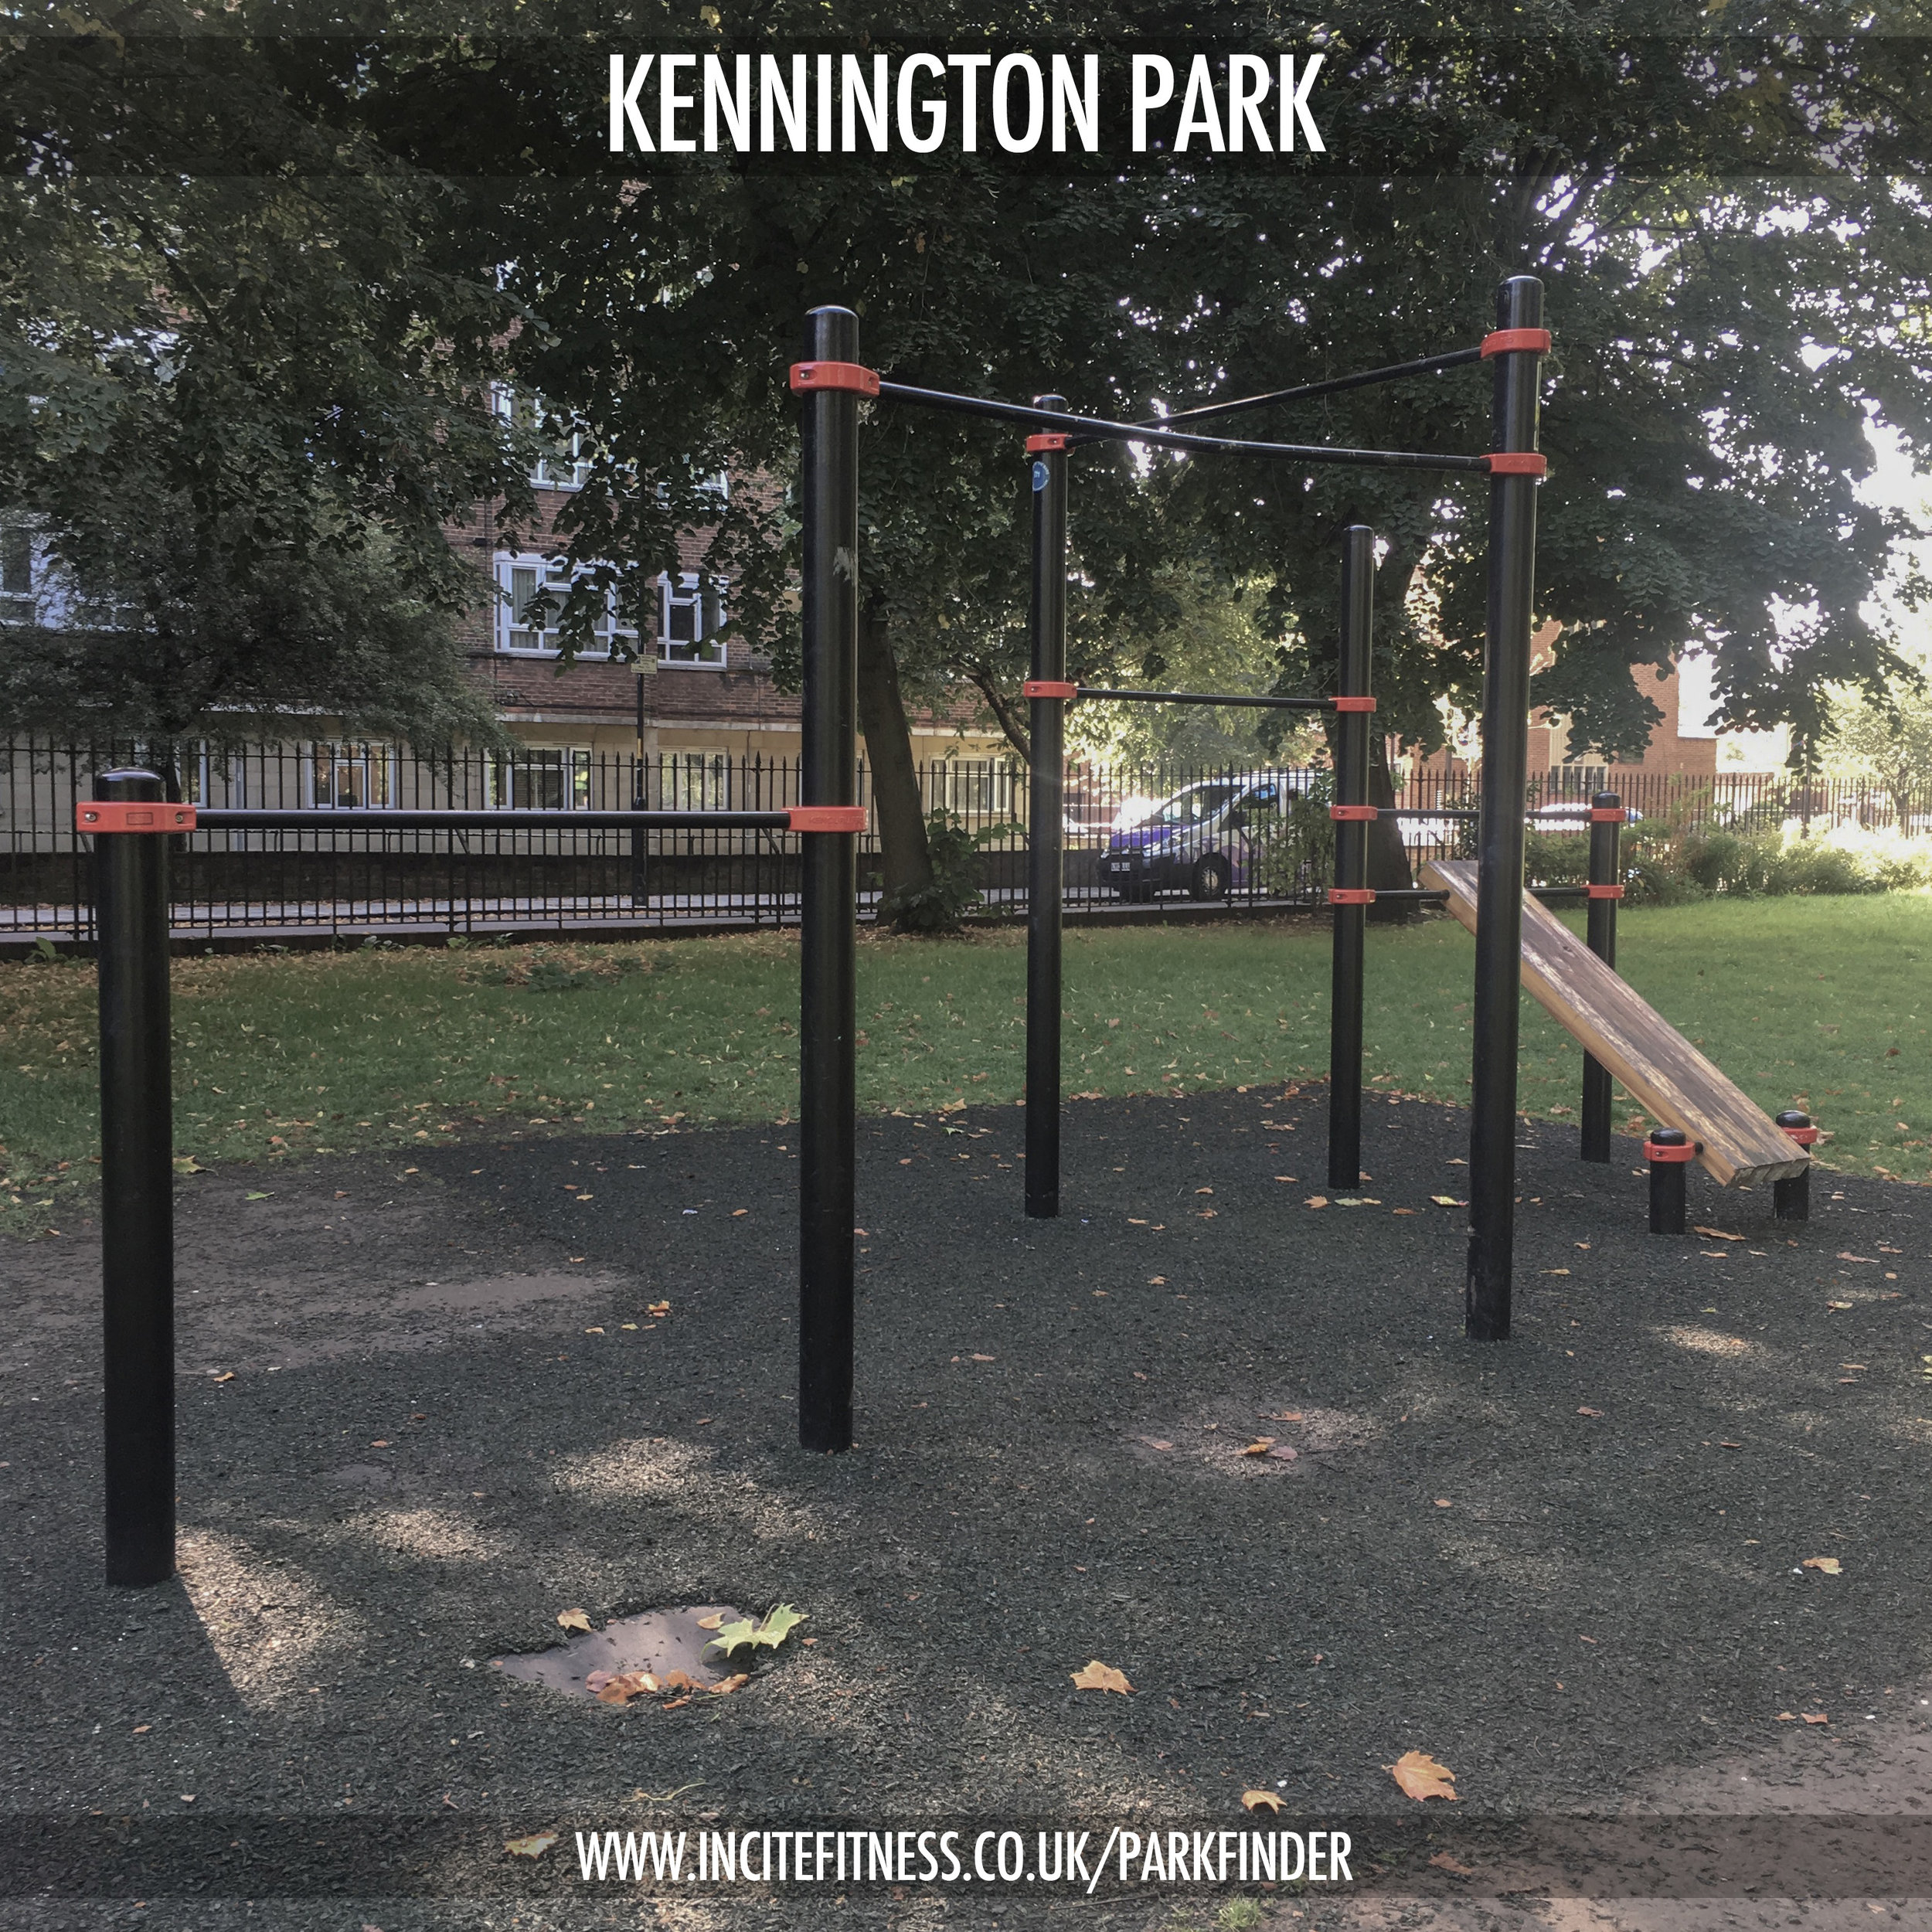 Kennington park 01 pull up bars.jpg